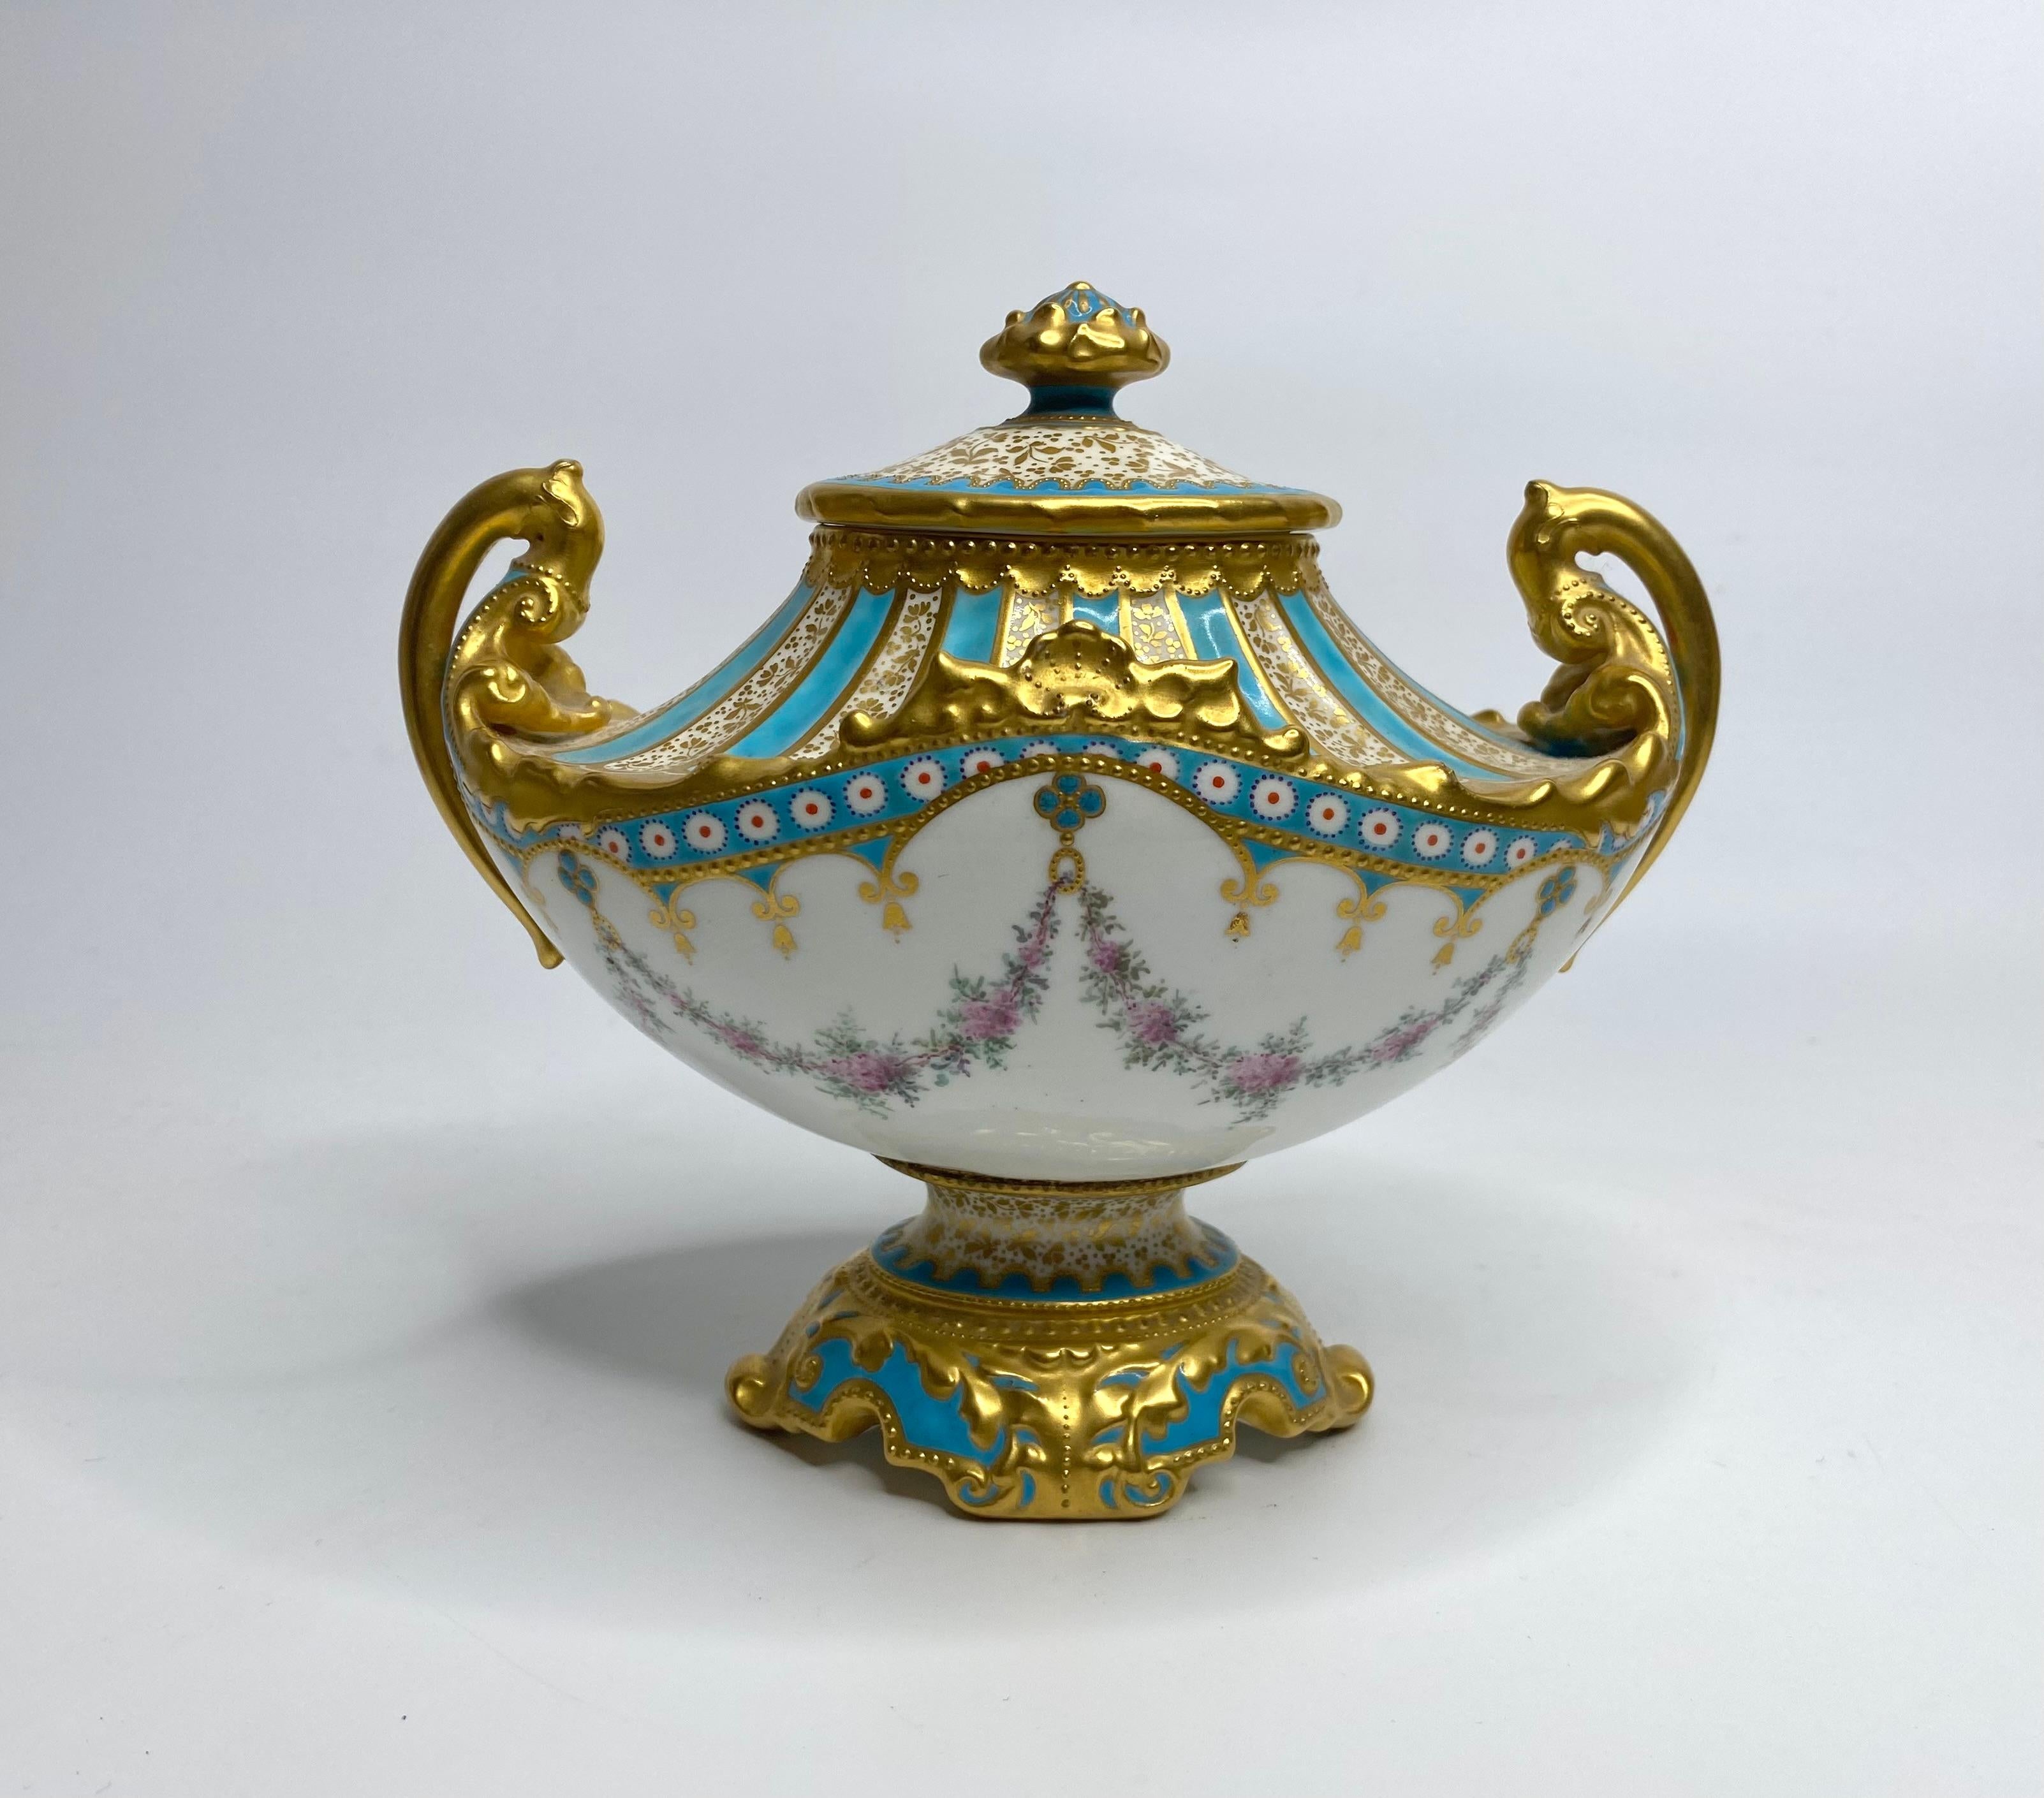 Vase et couvercle en porcelaine Royal Crown Derby, peints par LeRoy, datés de 1897. Vase à deux anses de style Sèvres, peint à la main avec des guirlandes de fleurs, suspendu à un vase contenant des fleurs, divisé par des panneaux de fleurs bleues.